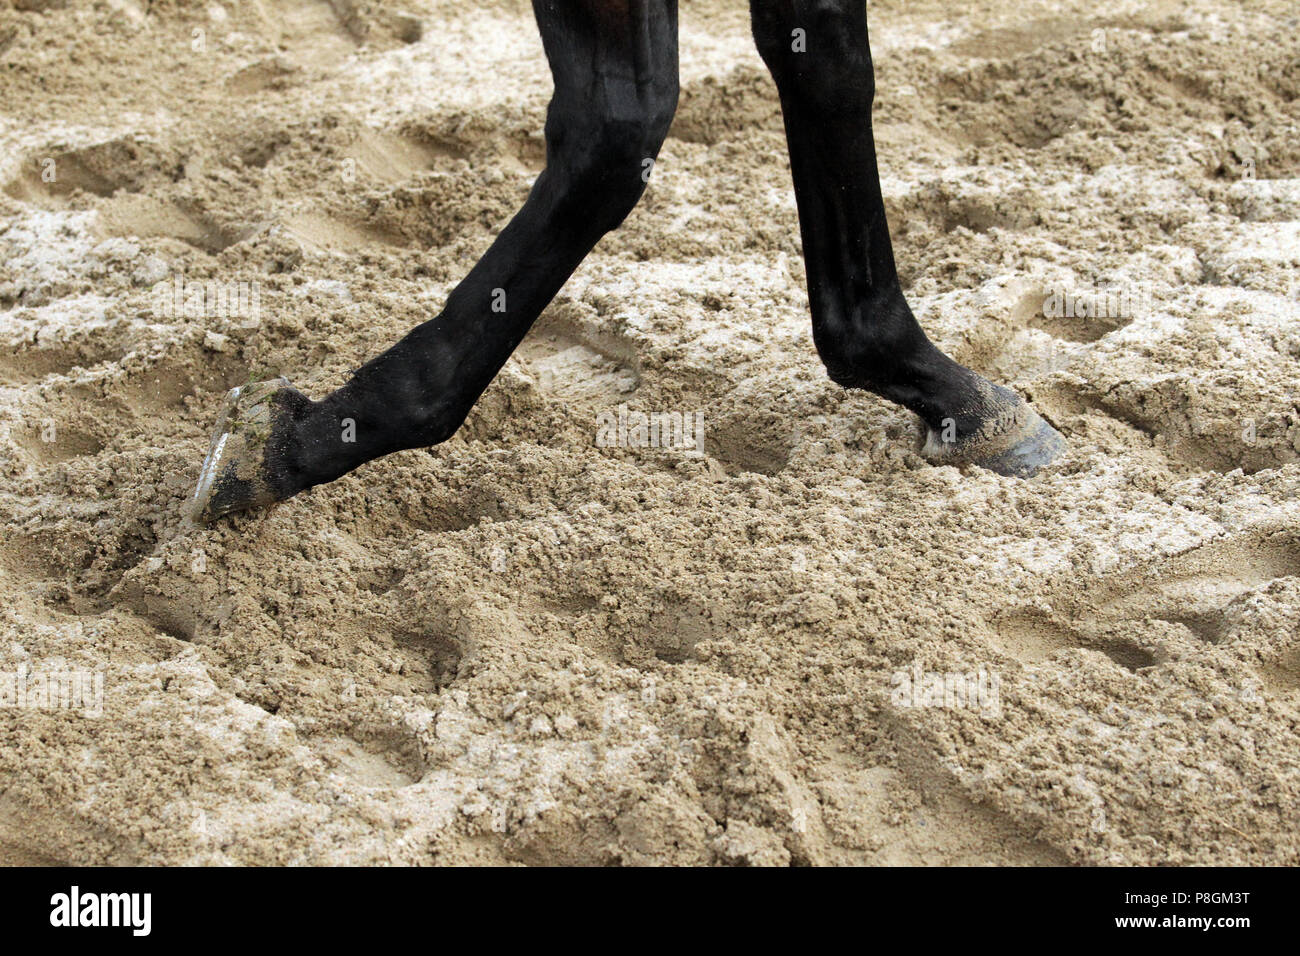 Las piernas del caballo de Dresde, ejecute a través de arena profunda Foto de stock